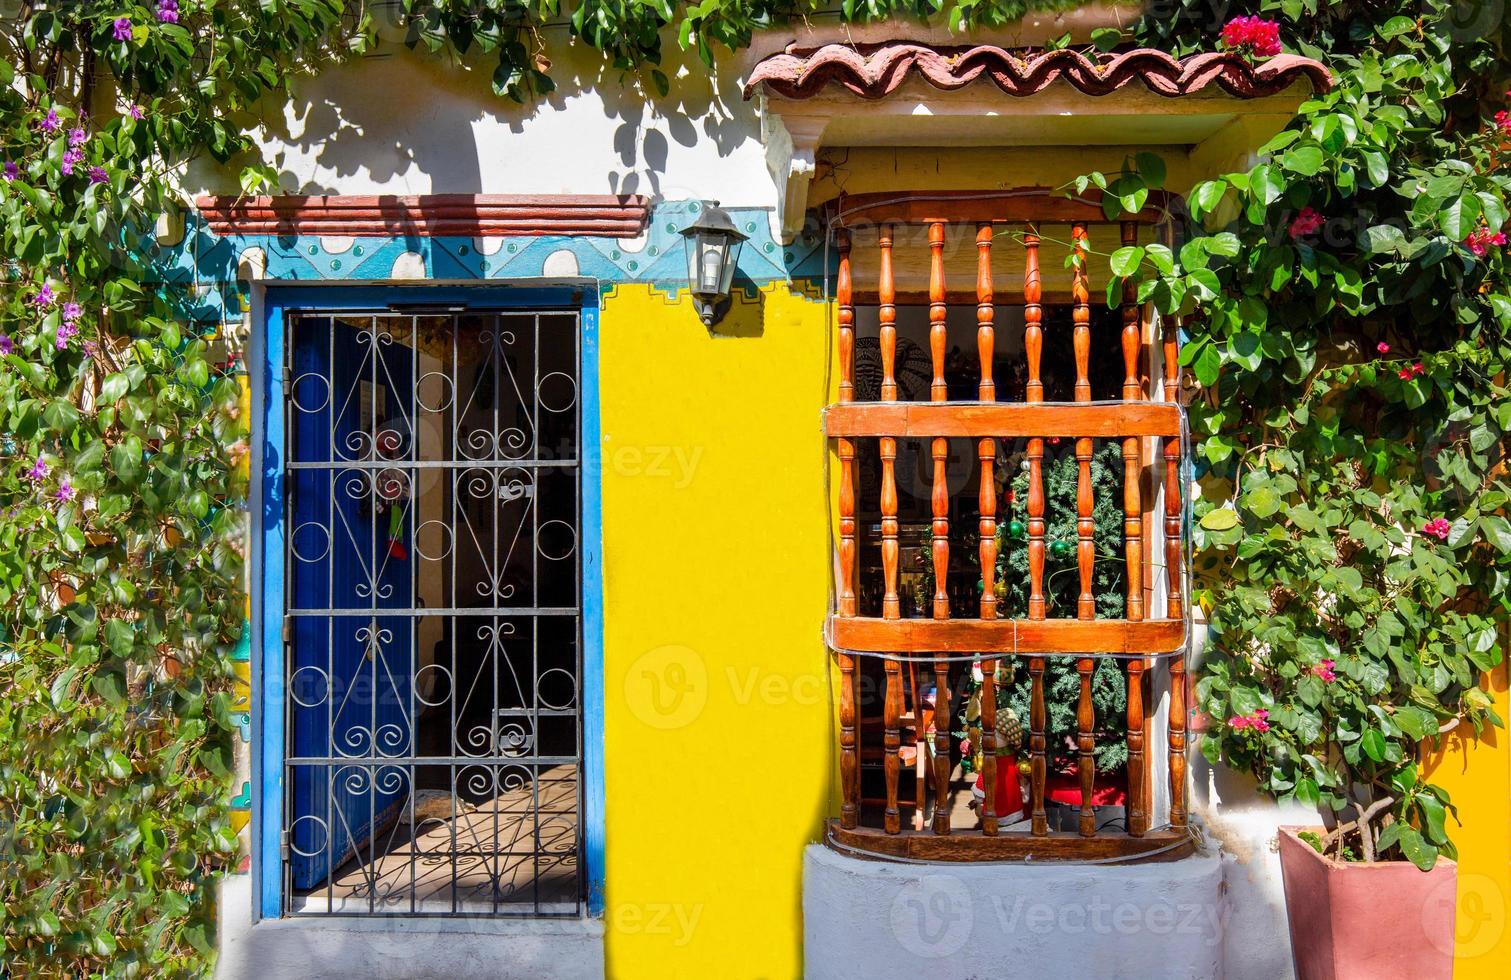 colombie, pittoresques rues colorées de cartagena dans le quartier historique de getsemani près de la ville fortifiée, ciudad amurallada photo